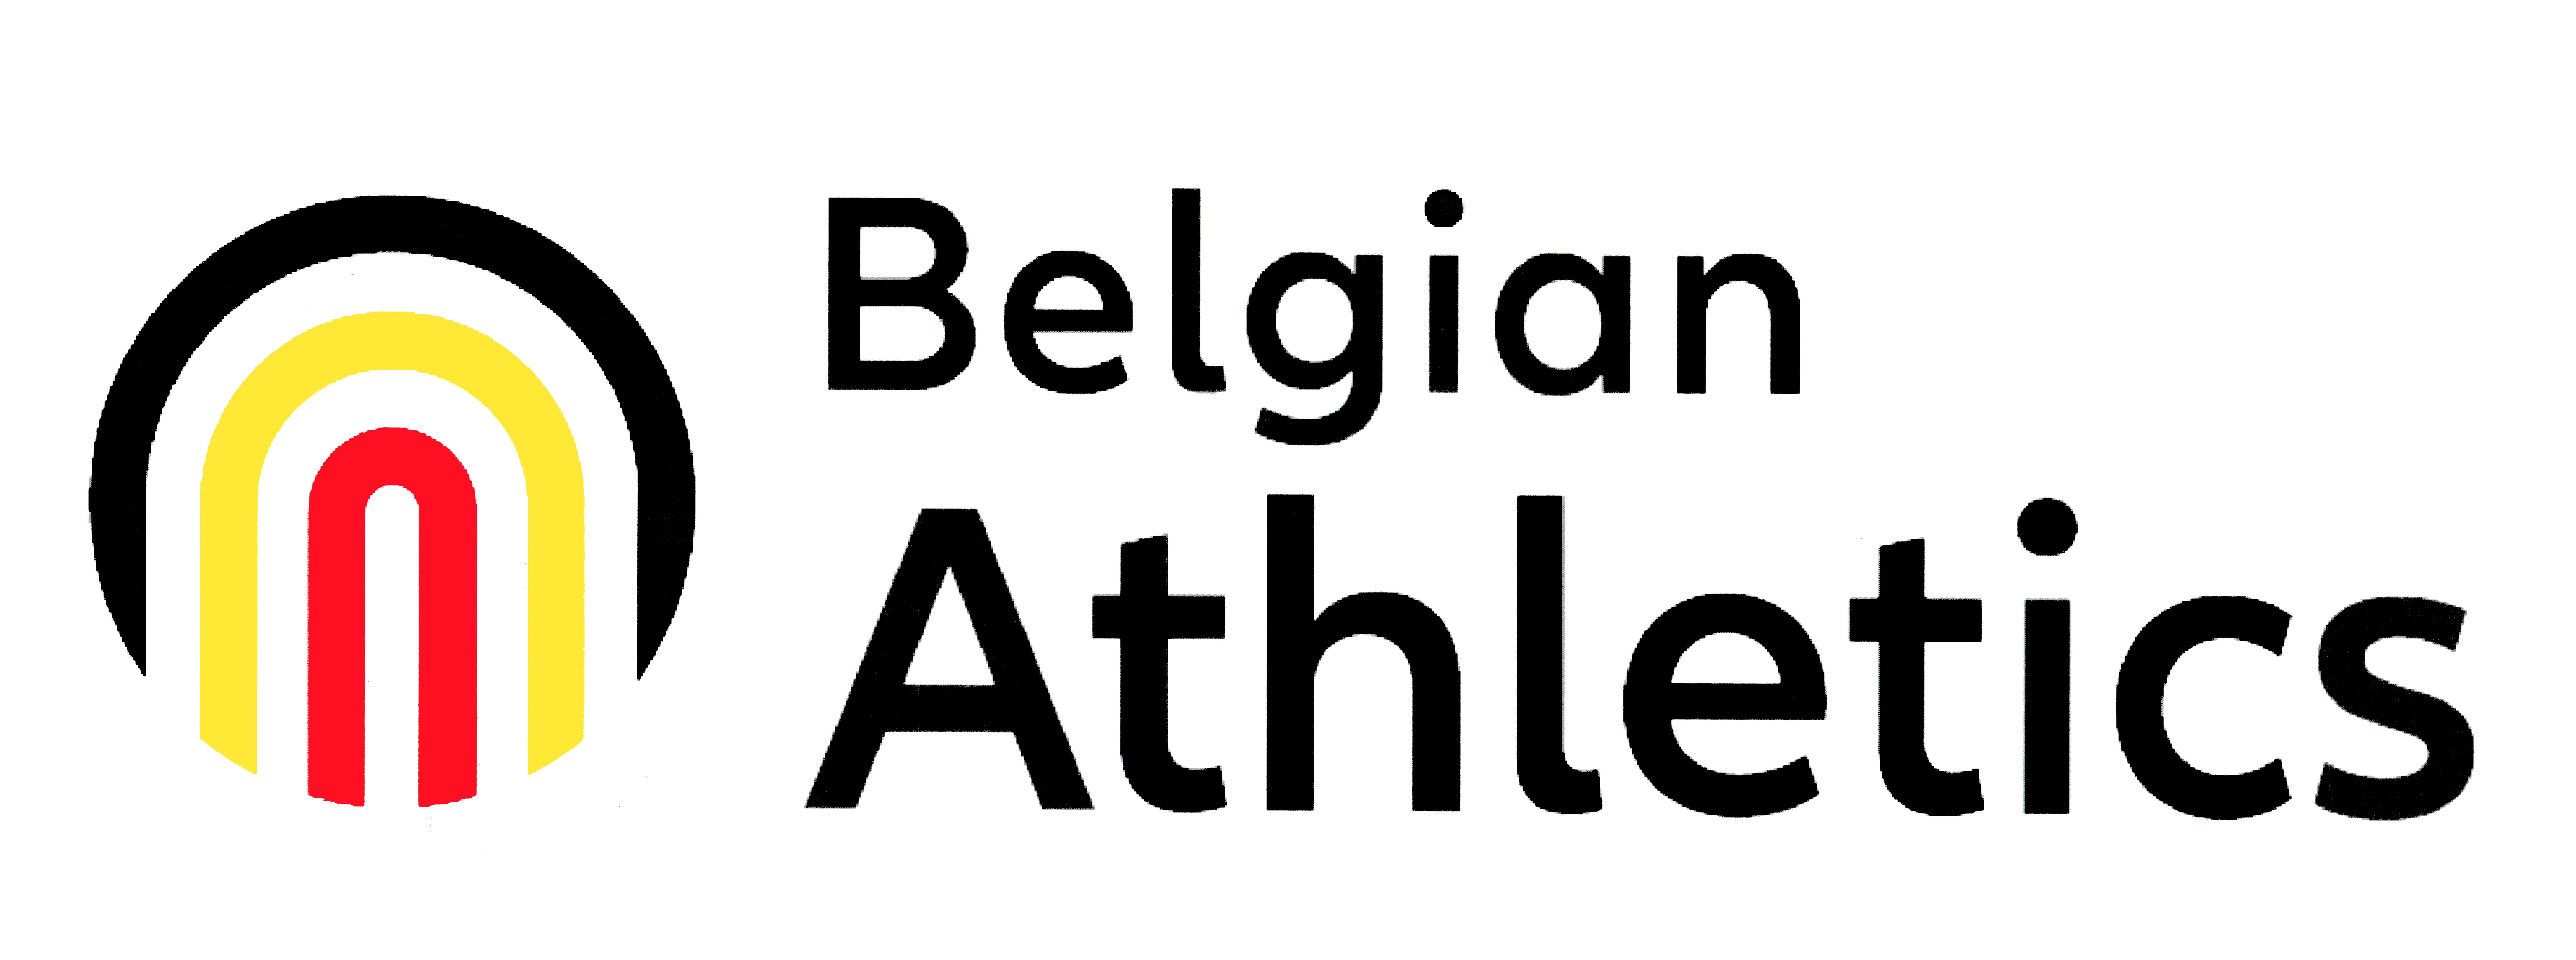 Belgian Athelics Logo.jpg